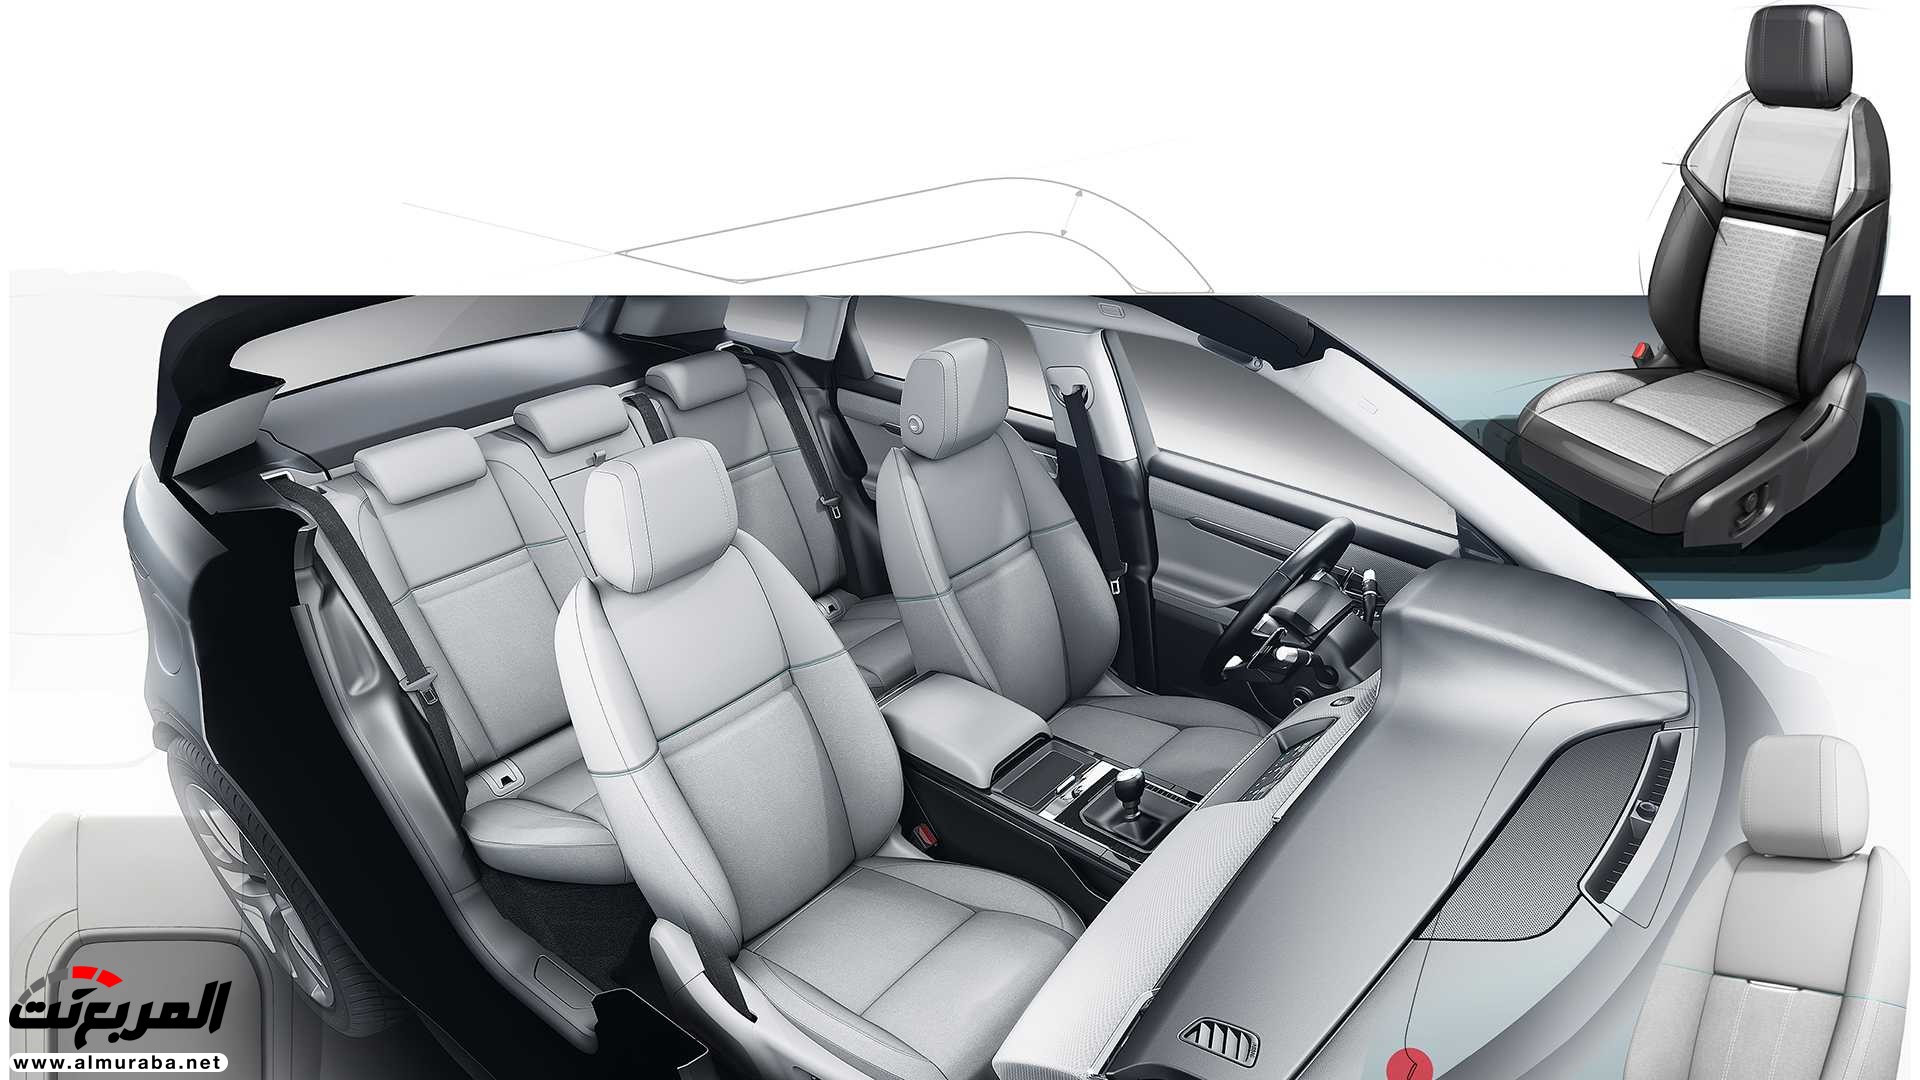 اهم 7 معلومات عن رنج روفر ايفوك 2020 الجديدة كلياً Range Rover Evoque 361